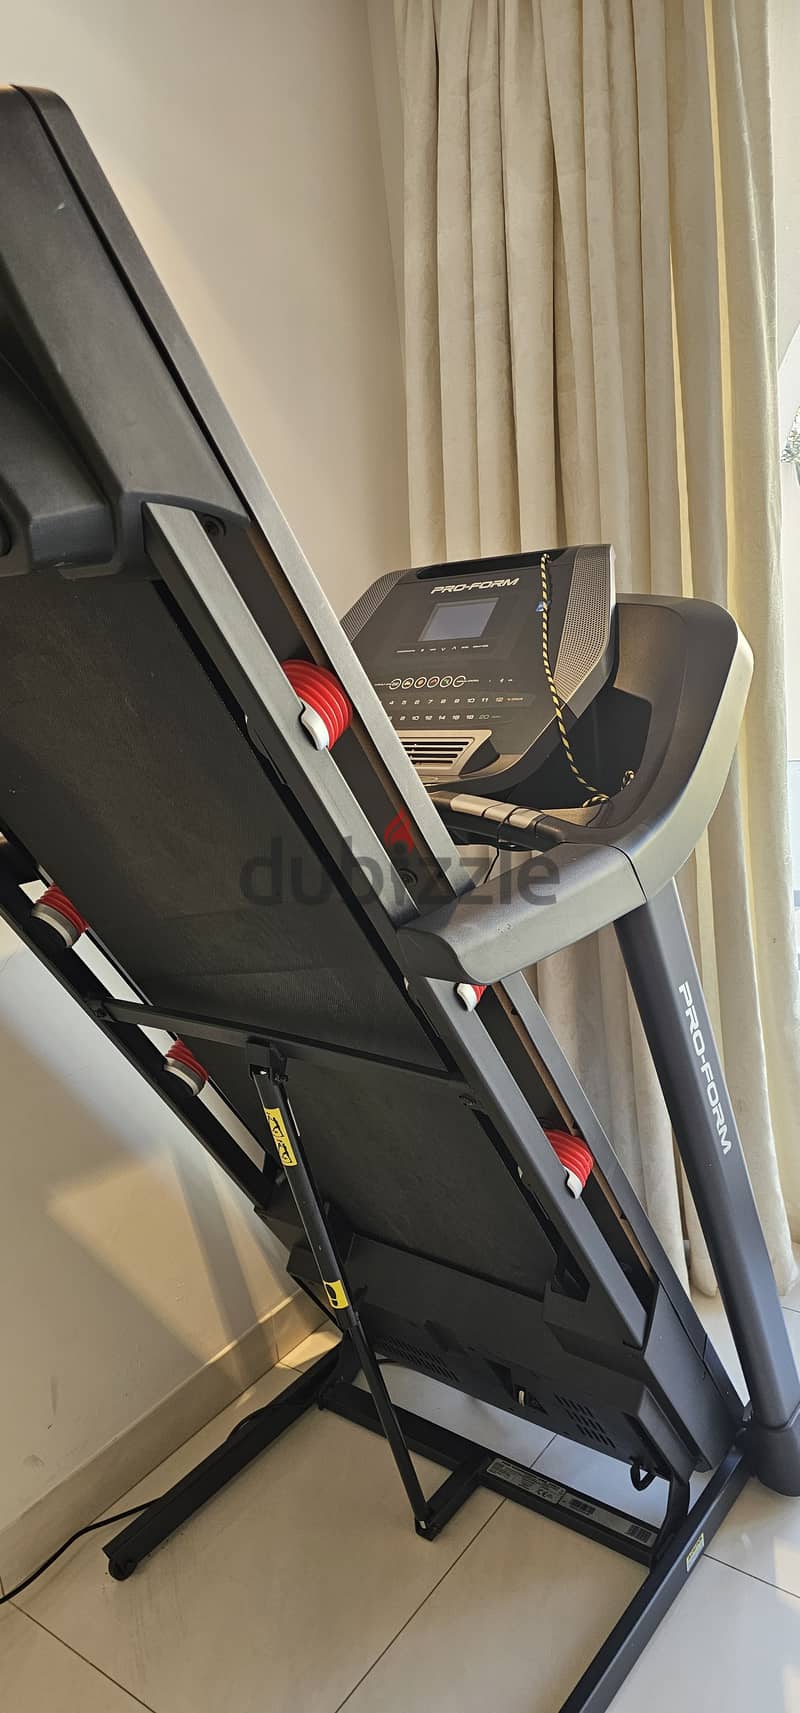 Proform 705 CST Folding Treadmill 2